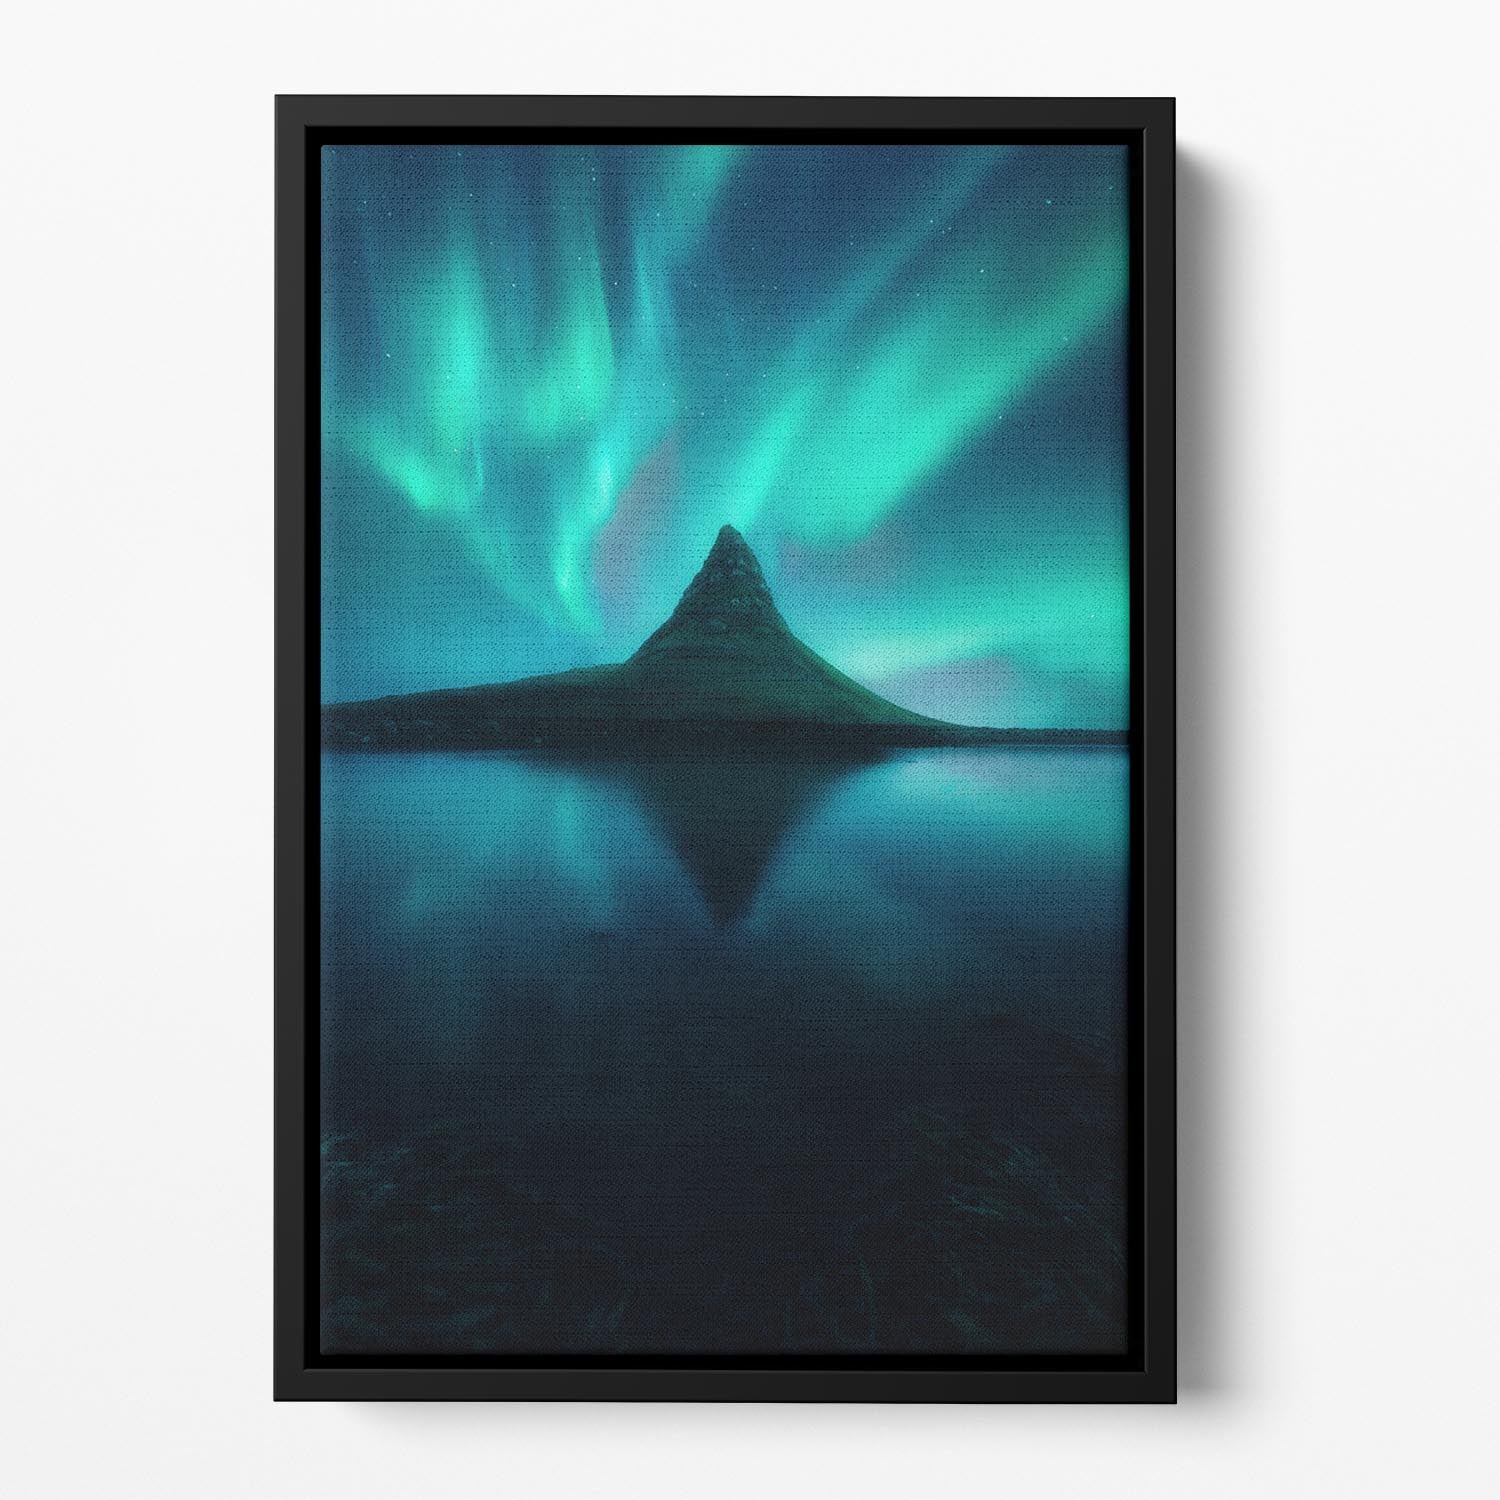 DreamTime Floating Framed Canvas - Canvas Art Rocks - 2